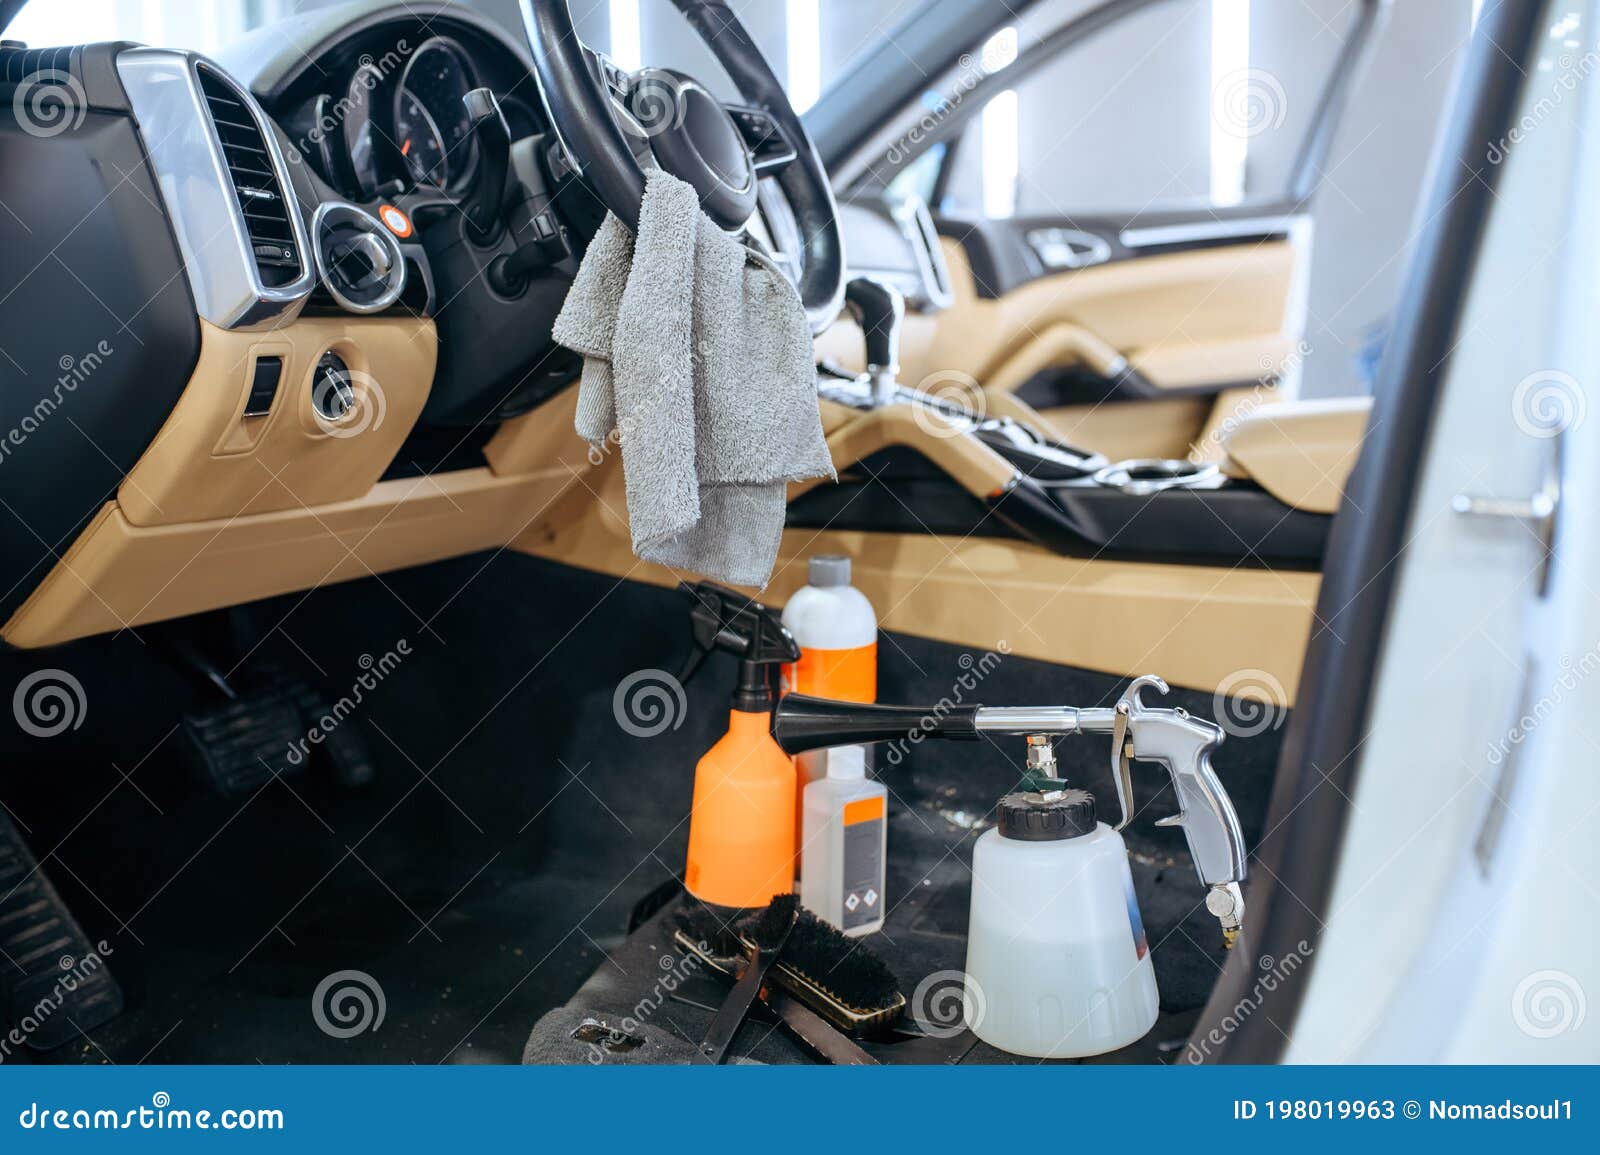 Autoinnenraum Und Tools Für Chemische Reinigung, Führt Im Einzelnen  Stockbild - Bild von hausarbeit, vorsichtig: 198019963